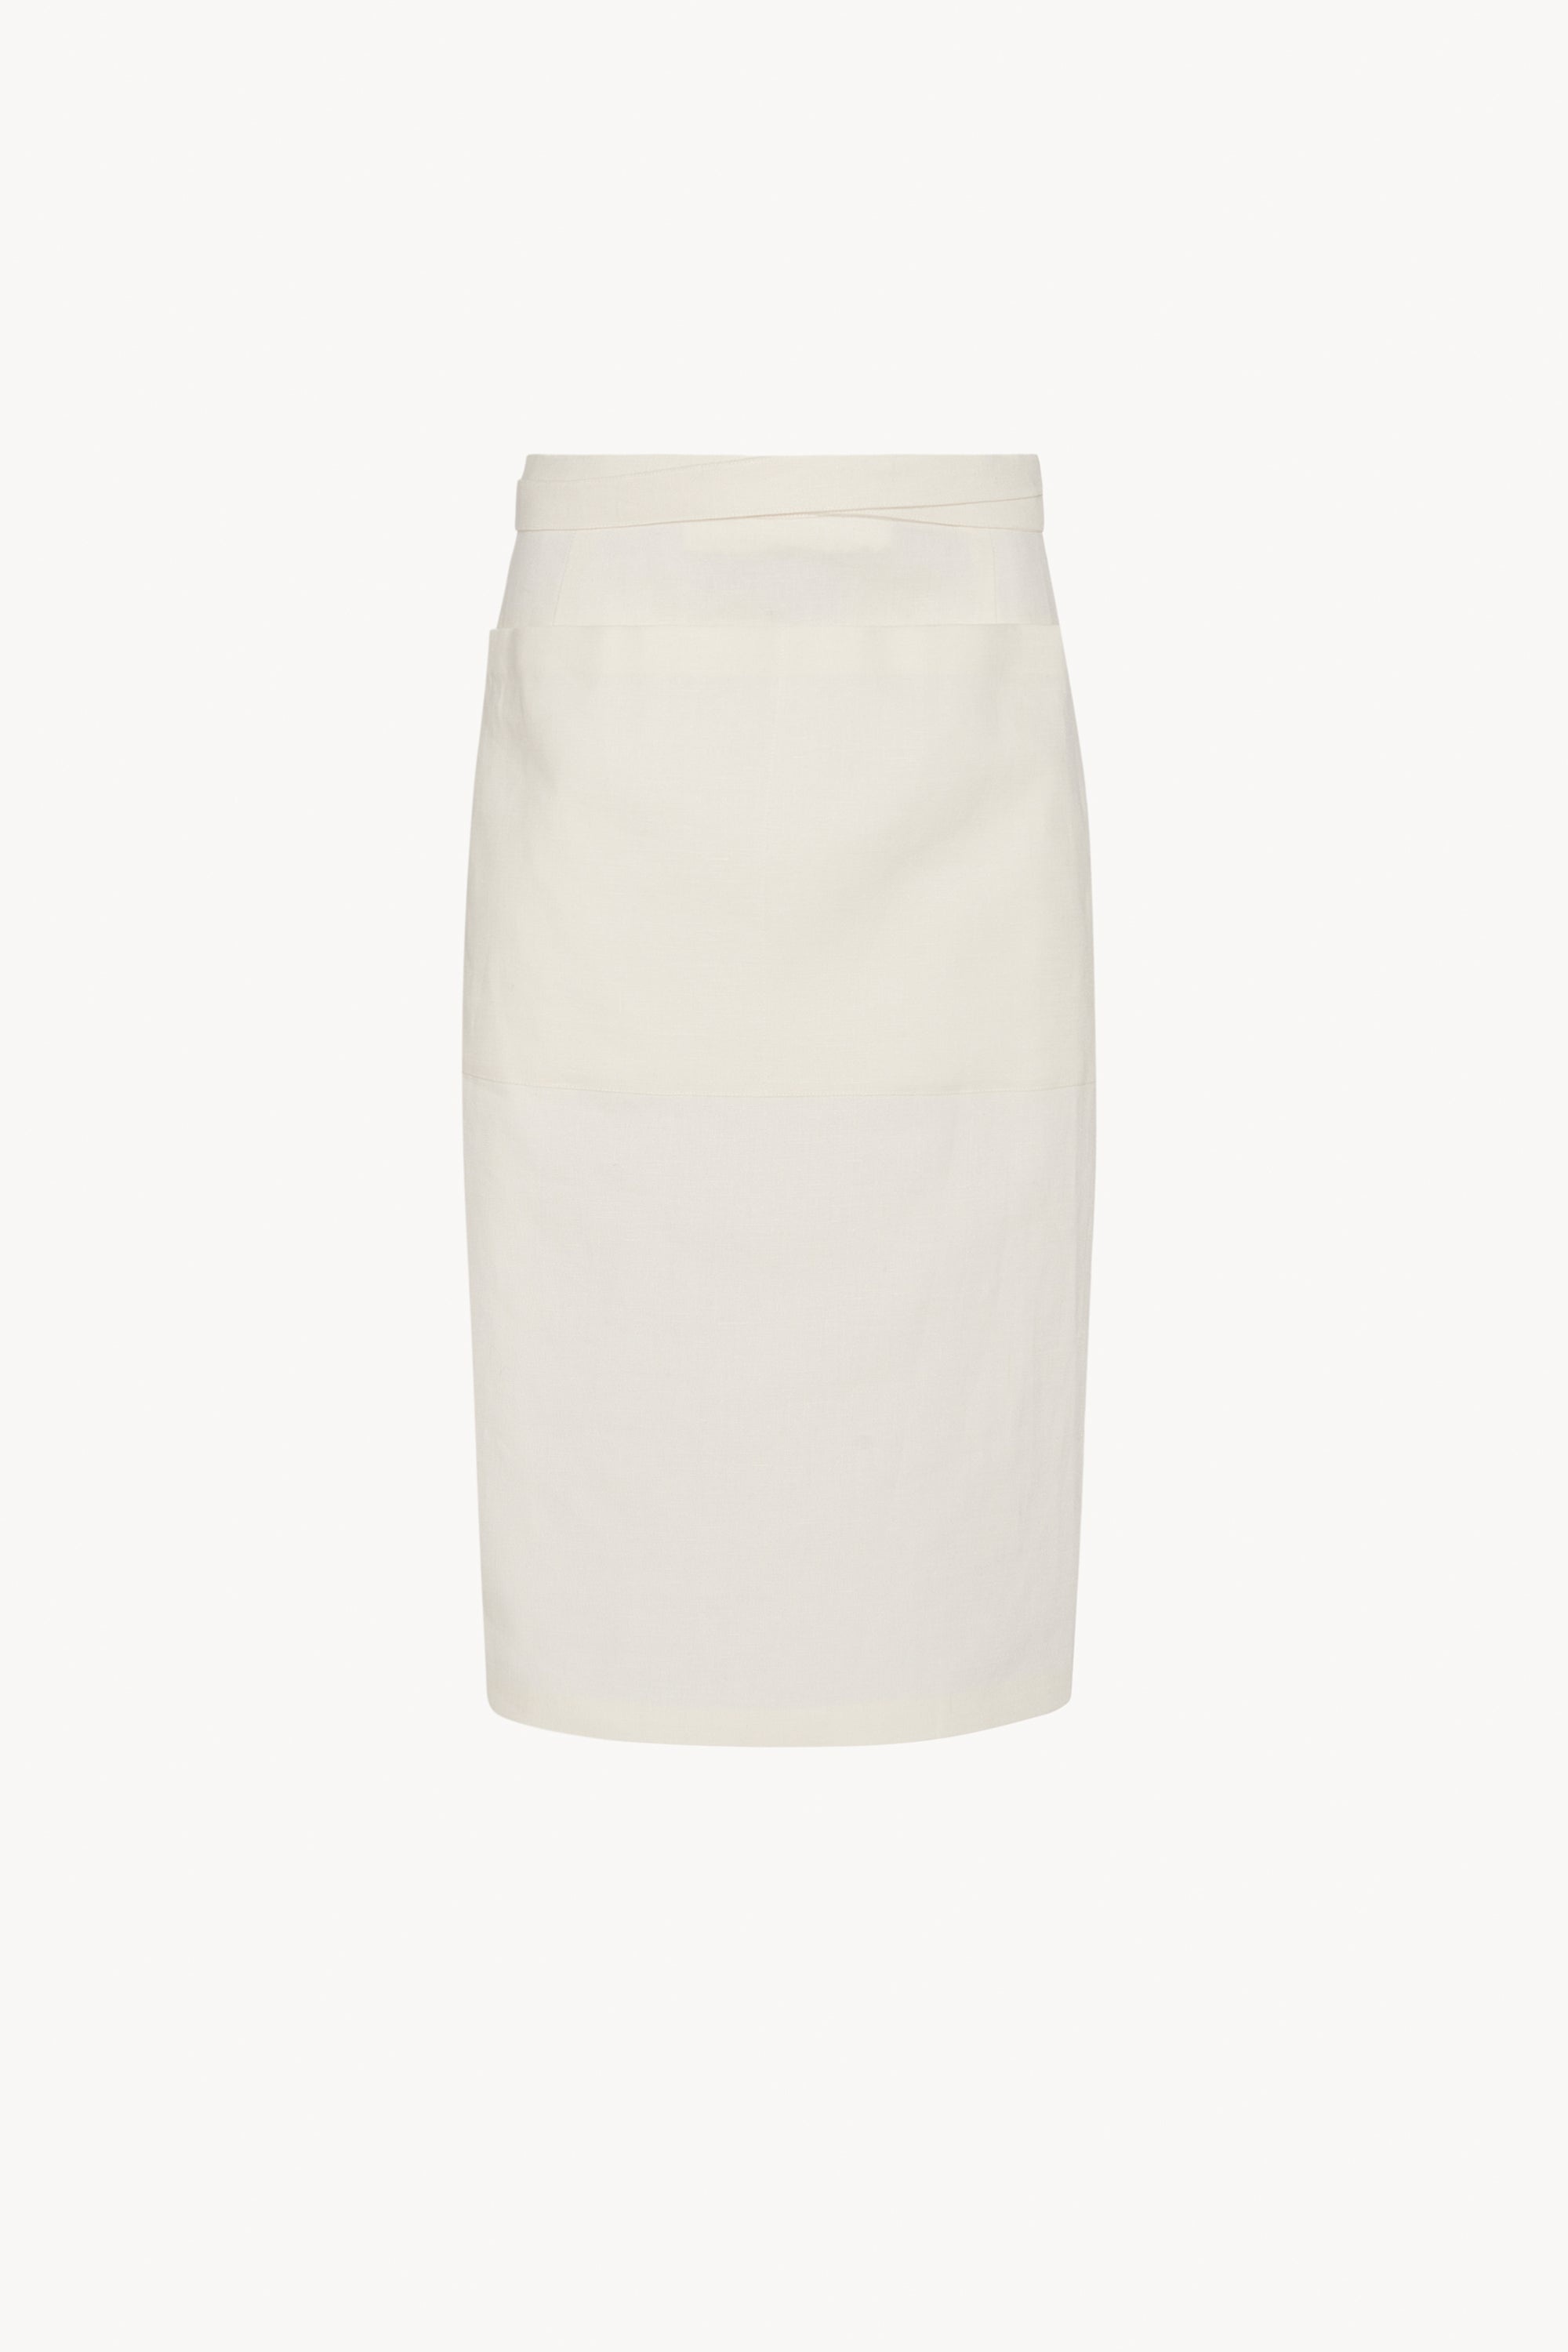 Lulli Skirt in Linen - 1